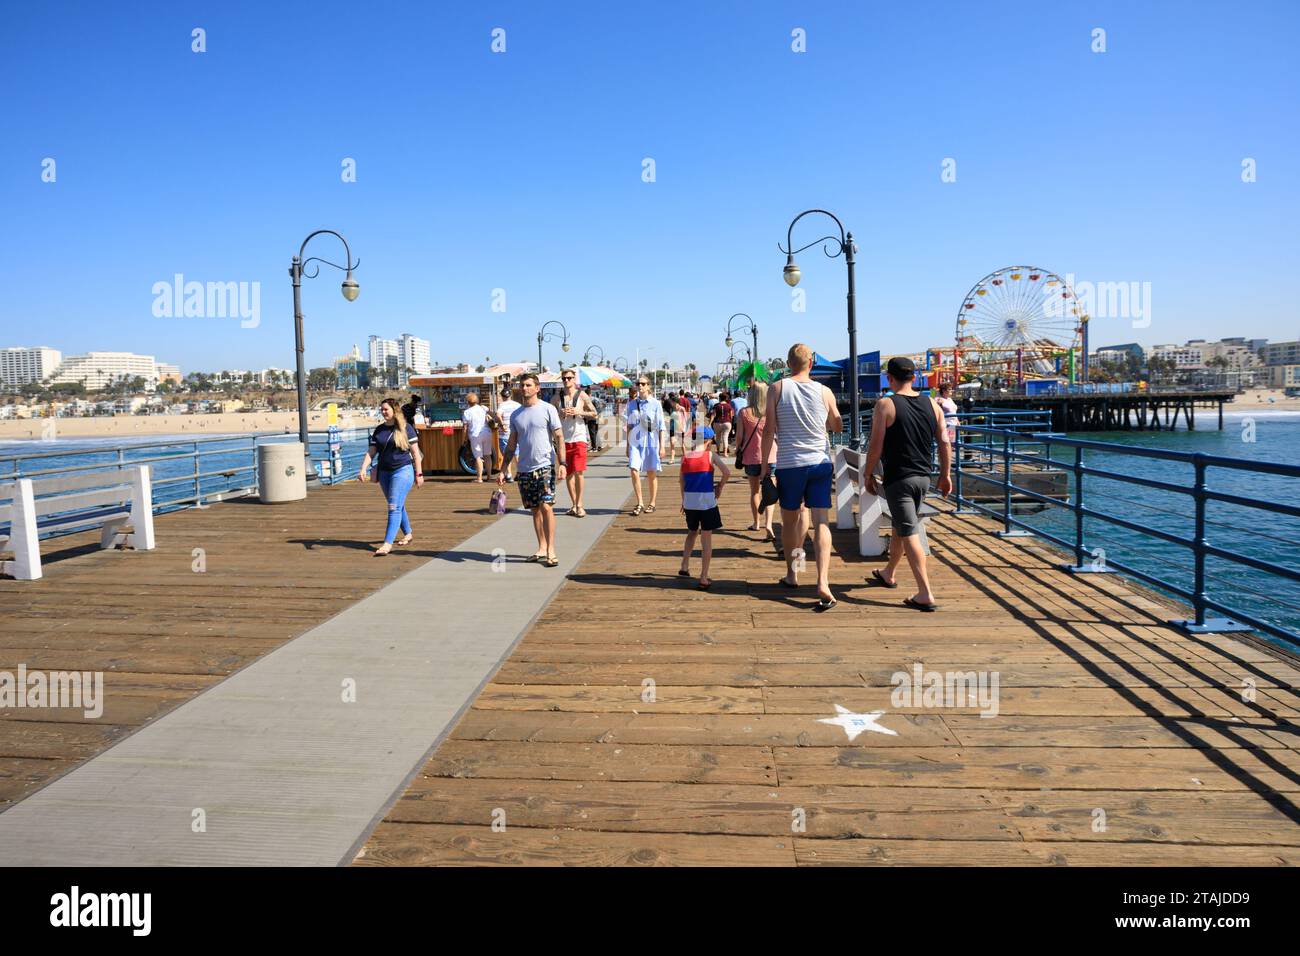 Touristen schlendern entlang des Piers, Santa Monica, Kalifornien, Vereinigte Staaten von amerika. USA. Oktober 2019 Stockfoto